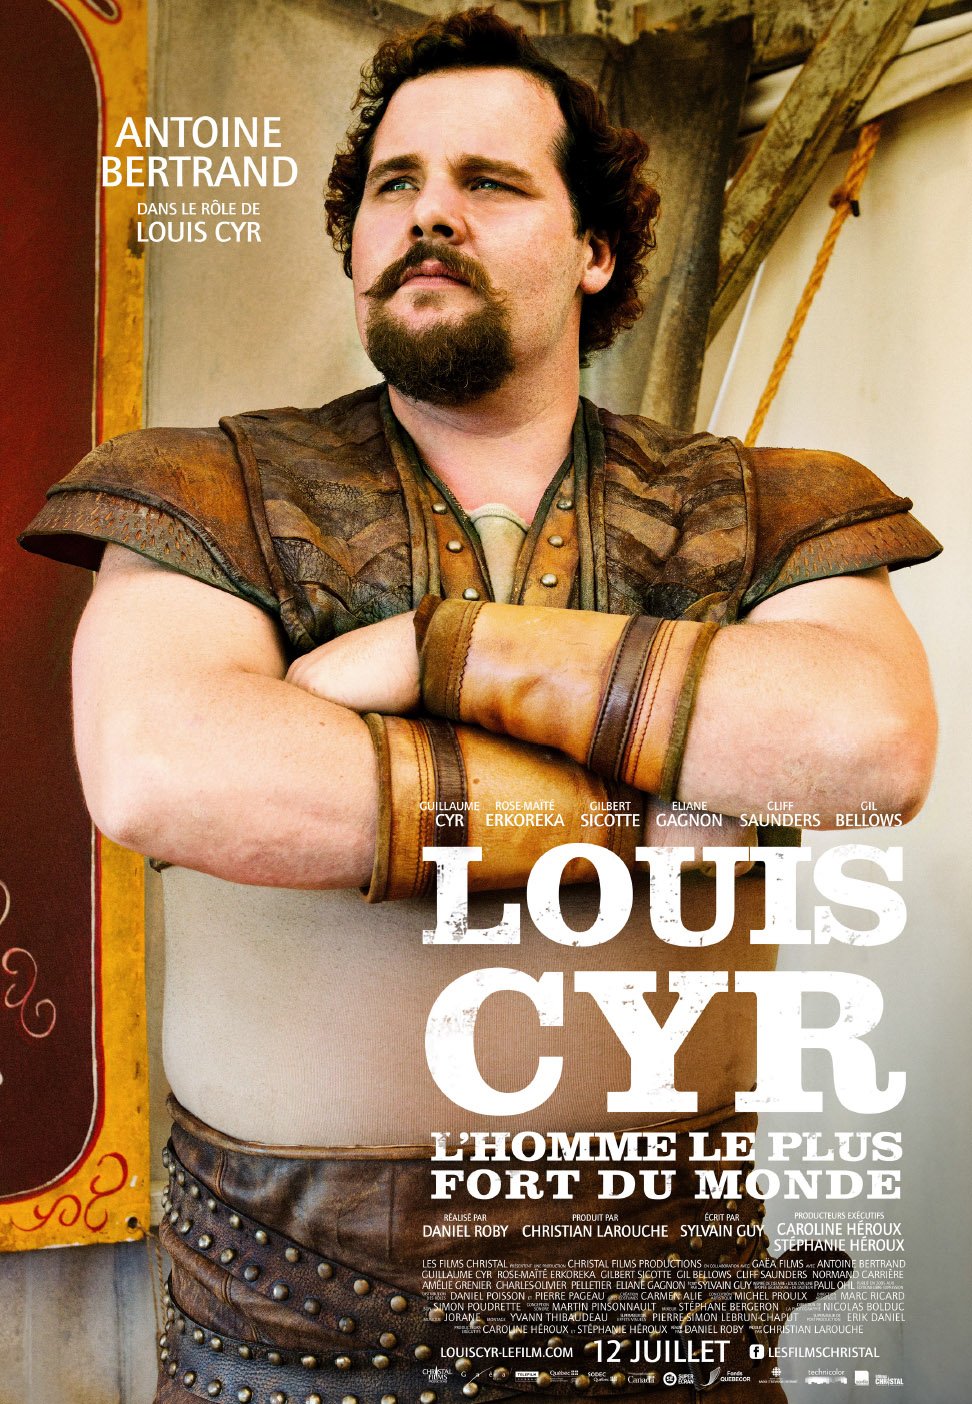 Poster of the movie Louis Cyr: L'homme le plus fort du monde